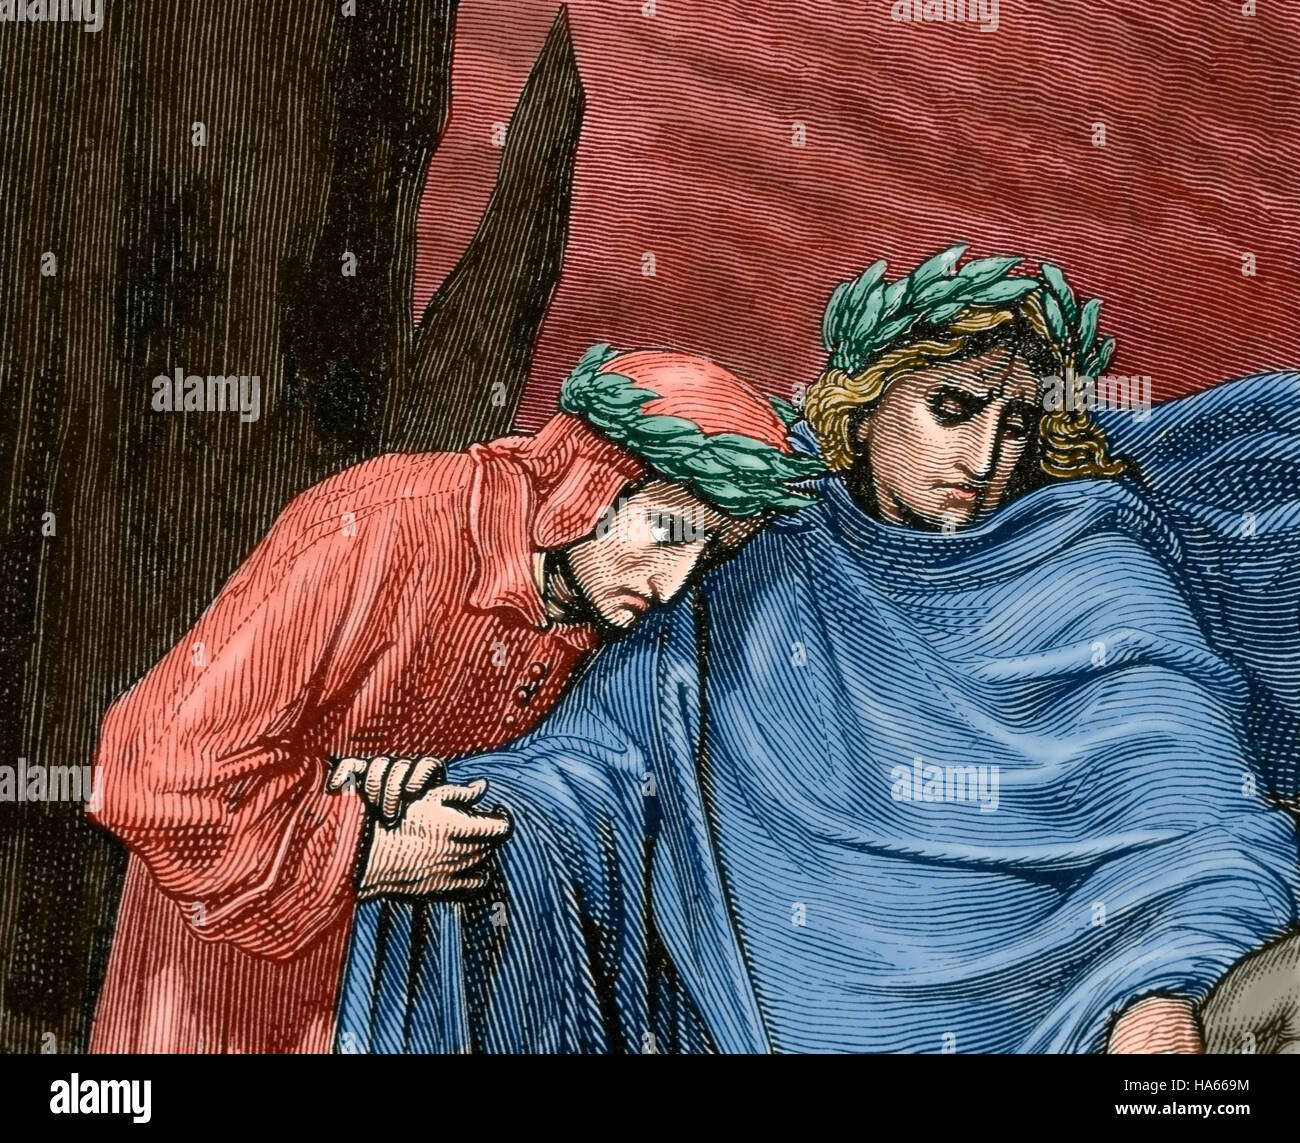 La Divina Commedia. Poema epico scritto da Dante Alighieri tra il 1308 e la sua morte in 1321. Viaggio di Dante attraverso l'Inferno, guidato dal poeta romano Virgilio. Incisione di Gustave Dore. Colorati. Foto Stock